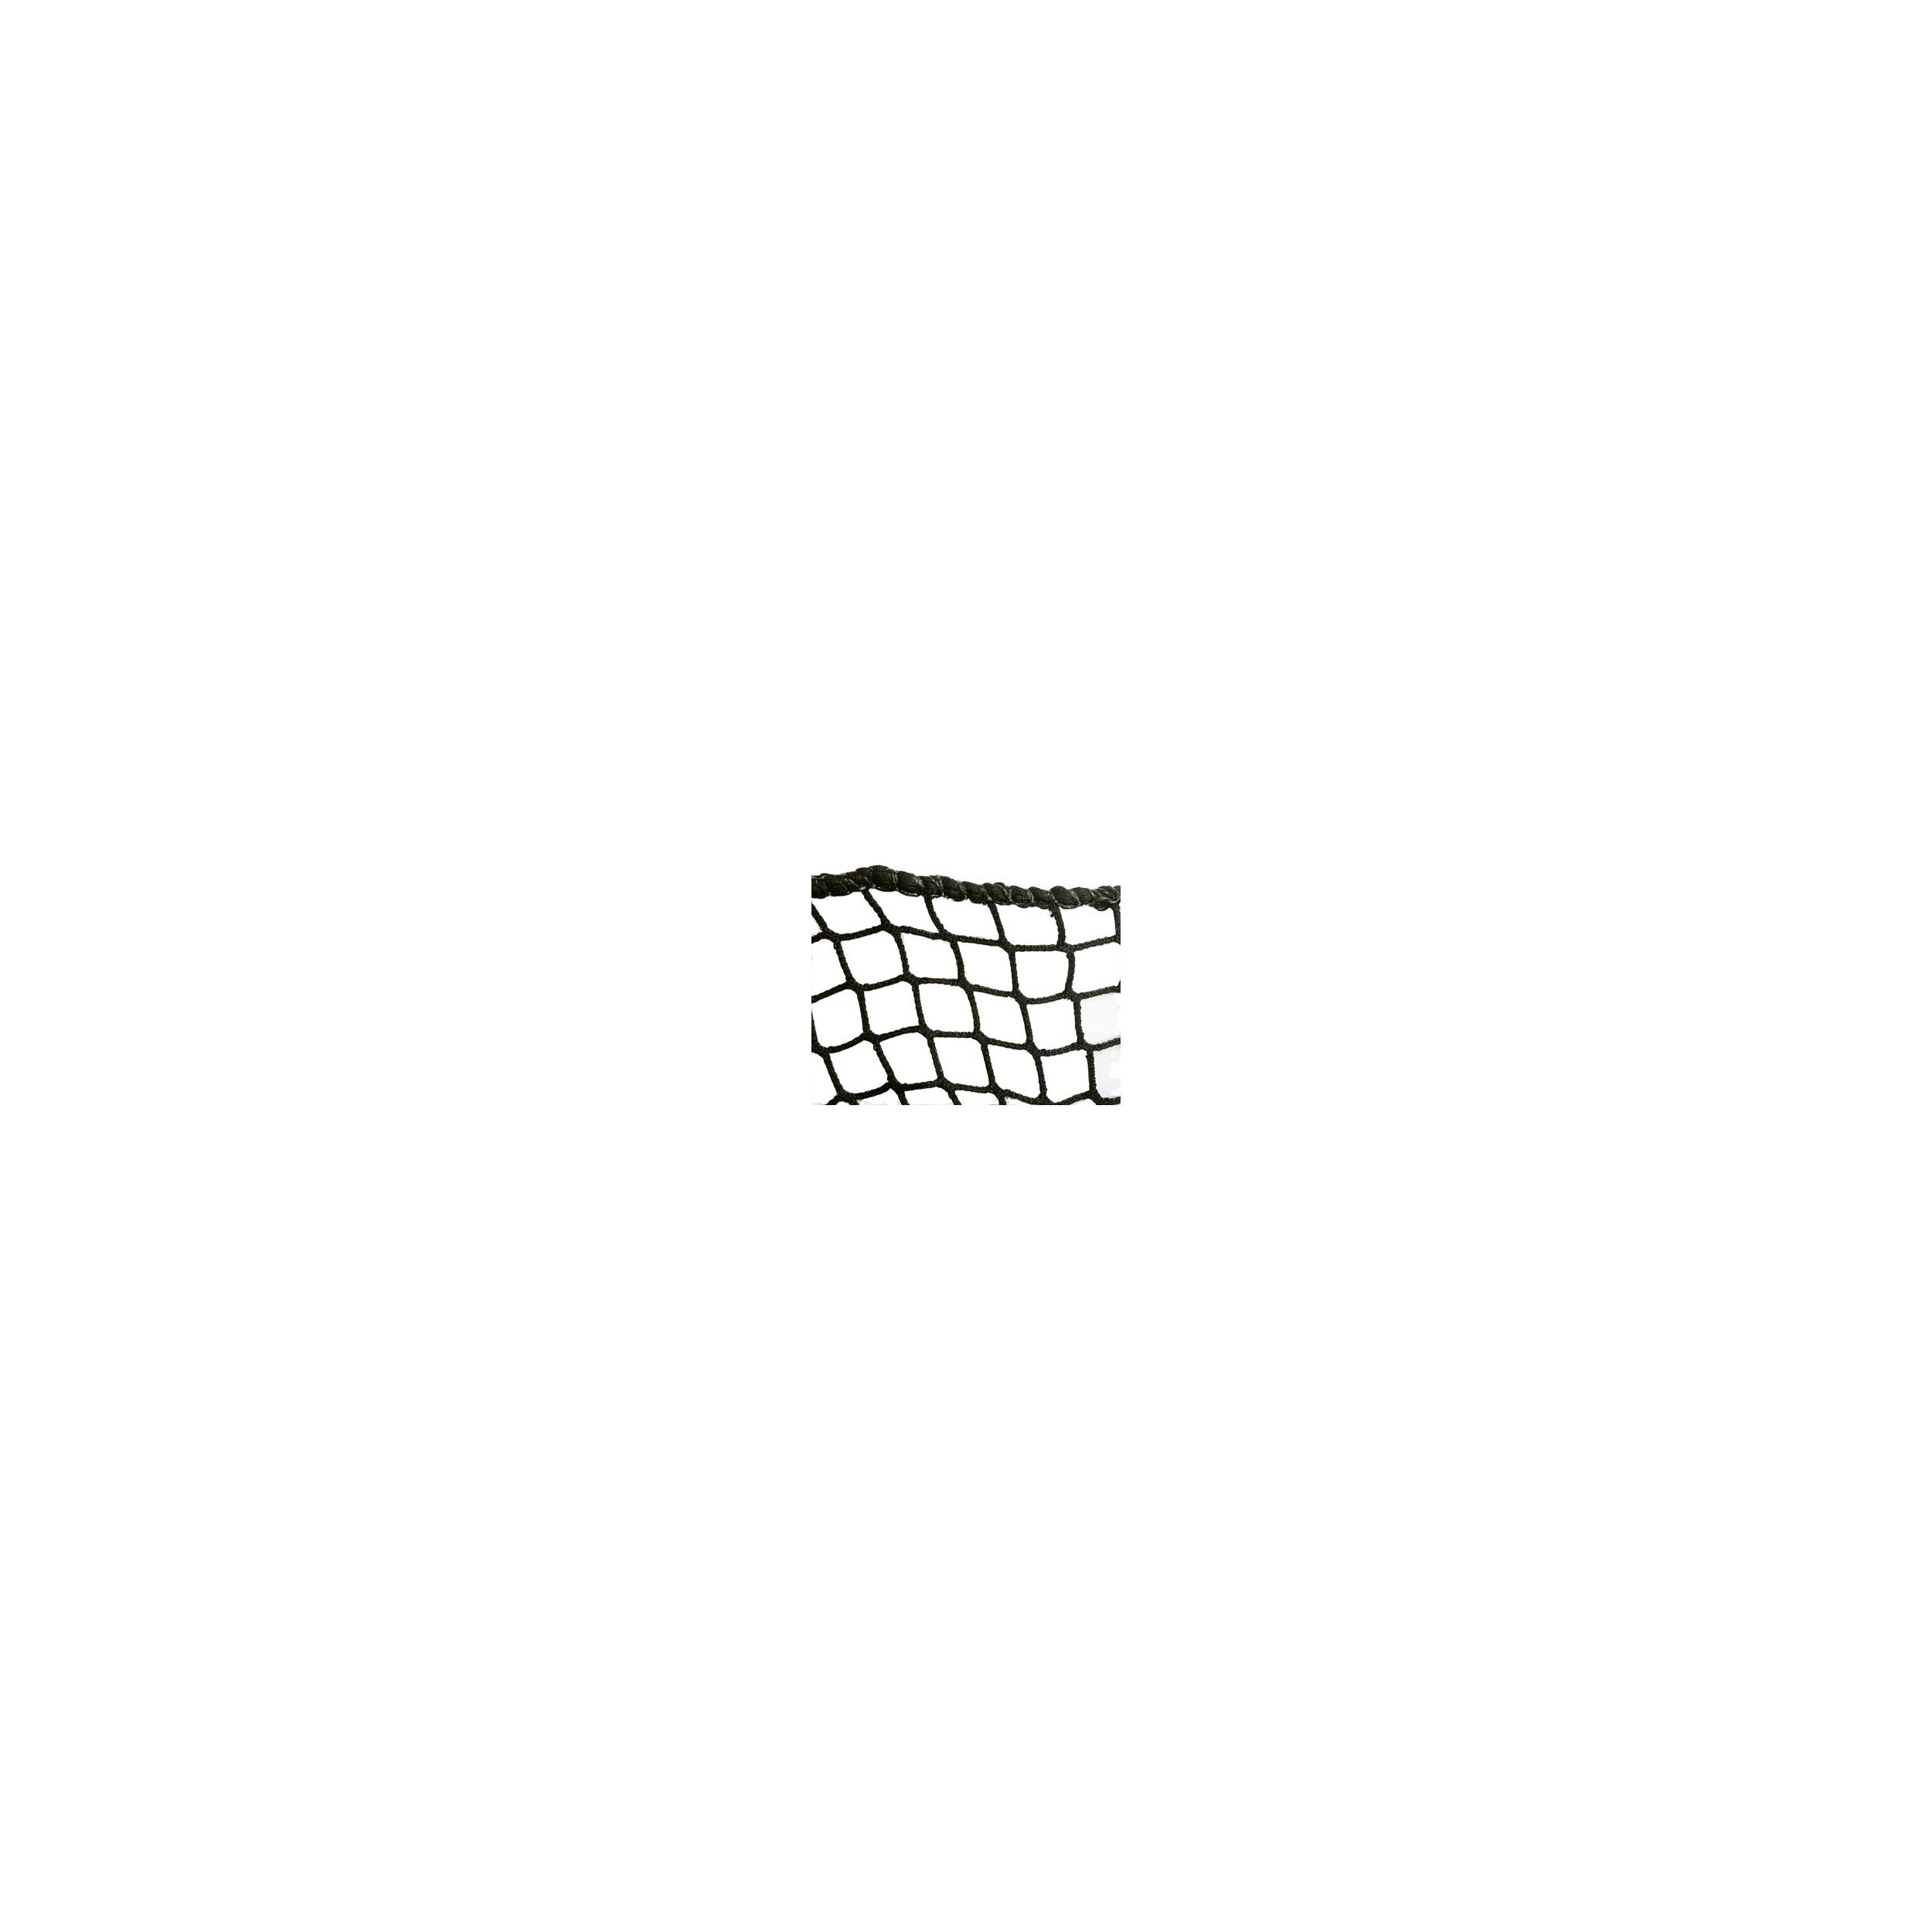 PP-Netz knotenlos # 60 mm Maschenweite Ø 5 m - Netze, Seile & mehr